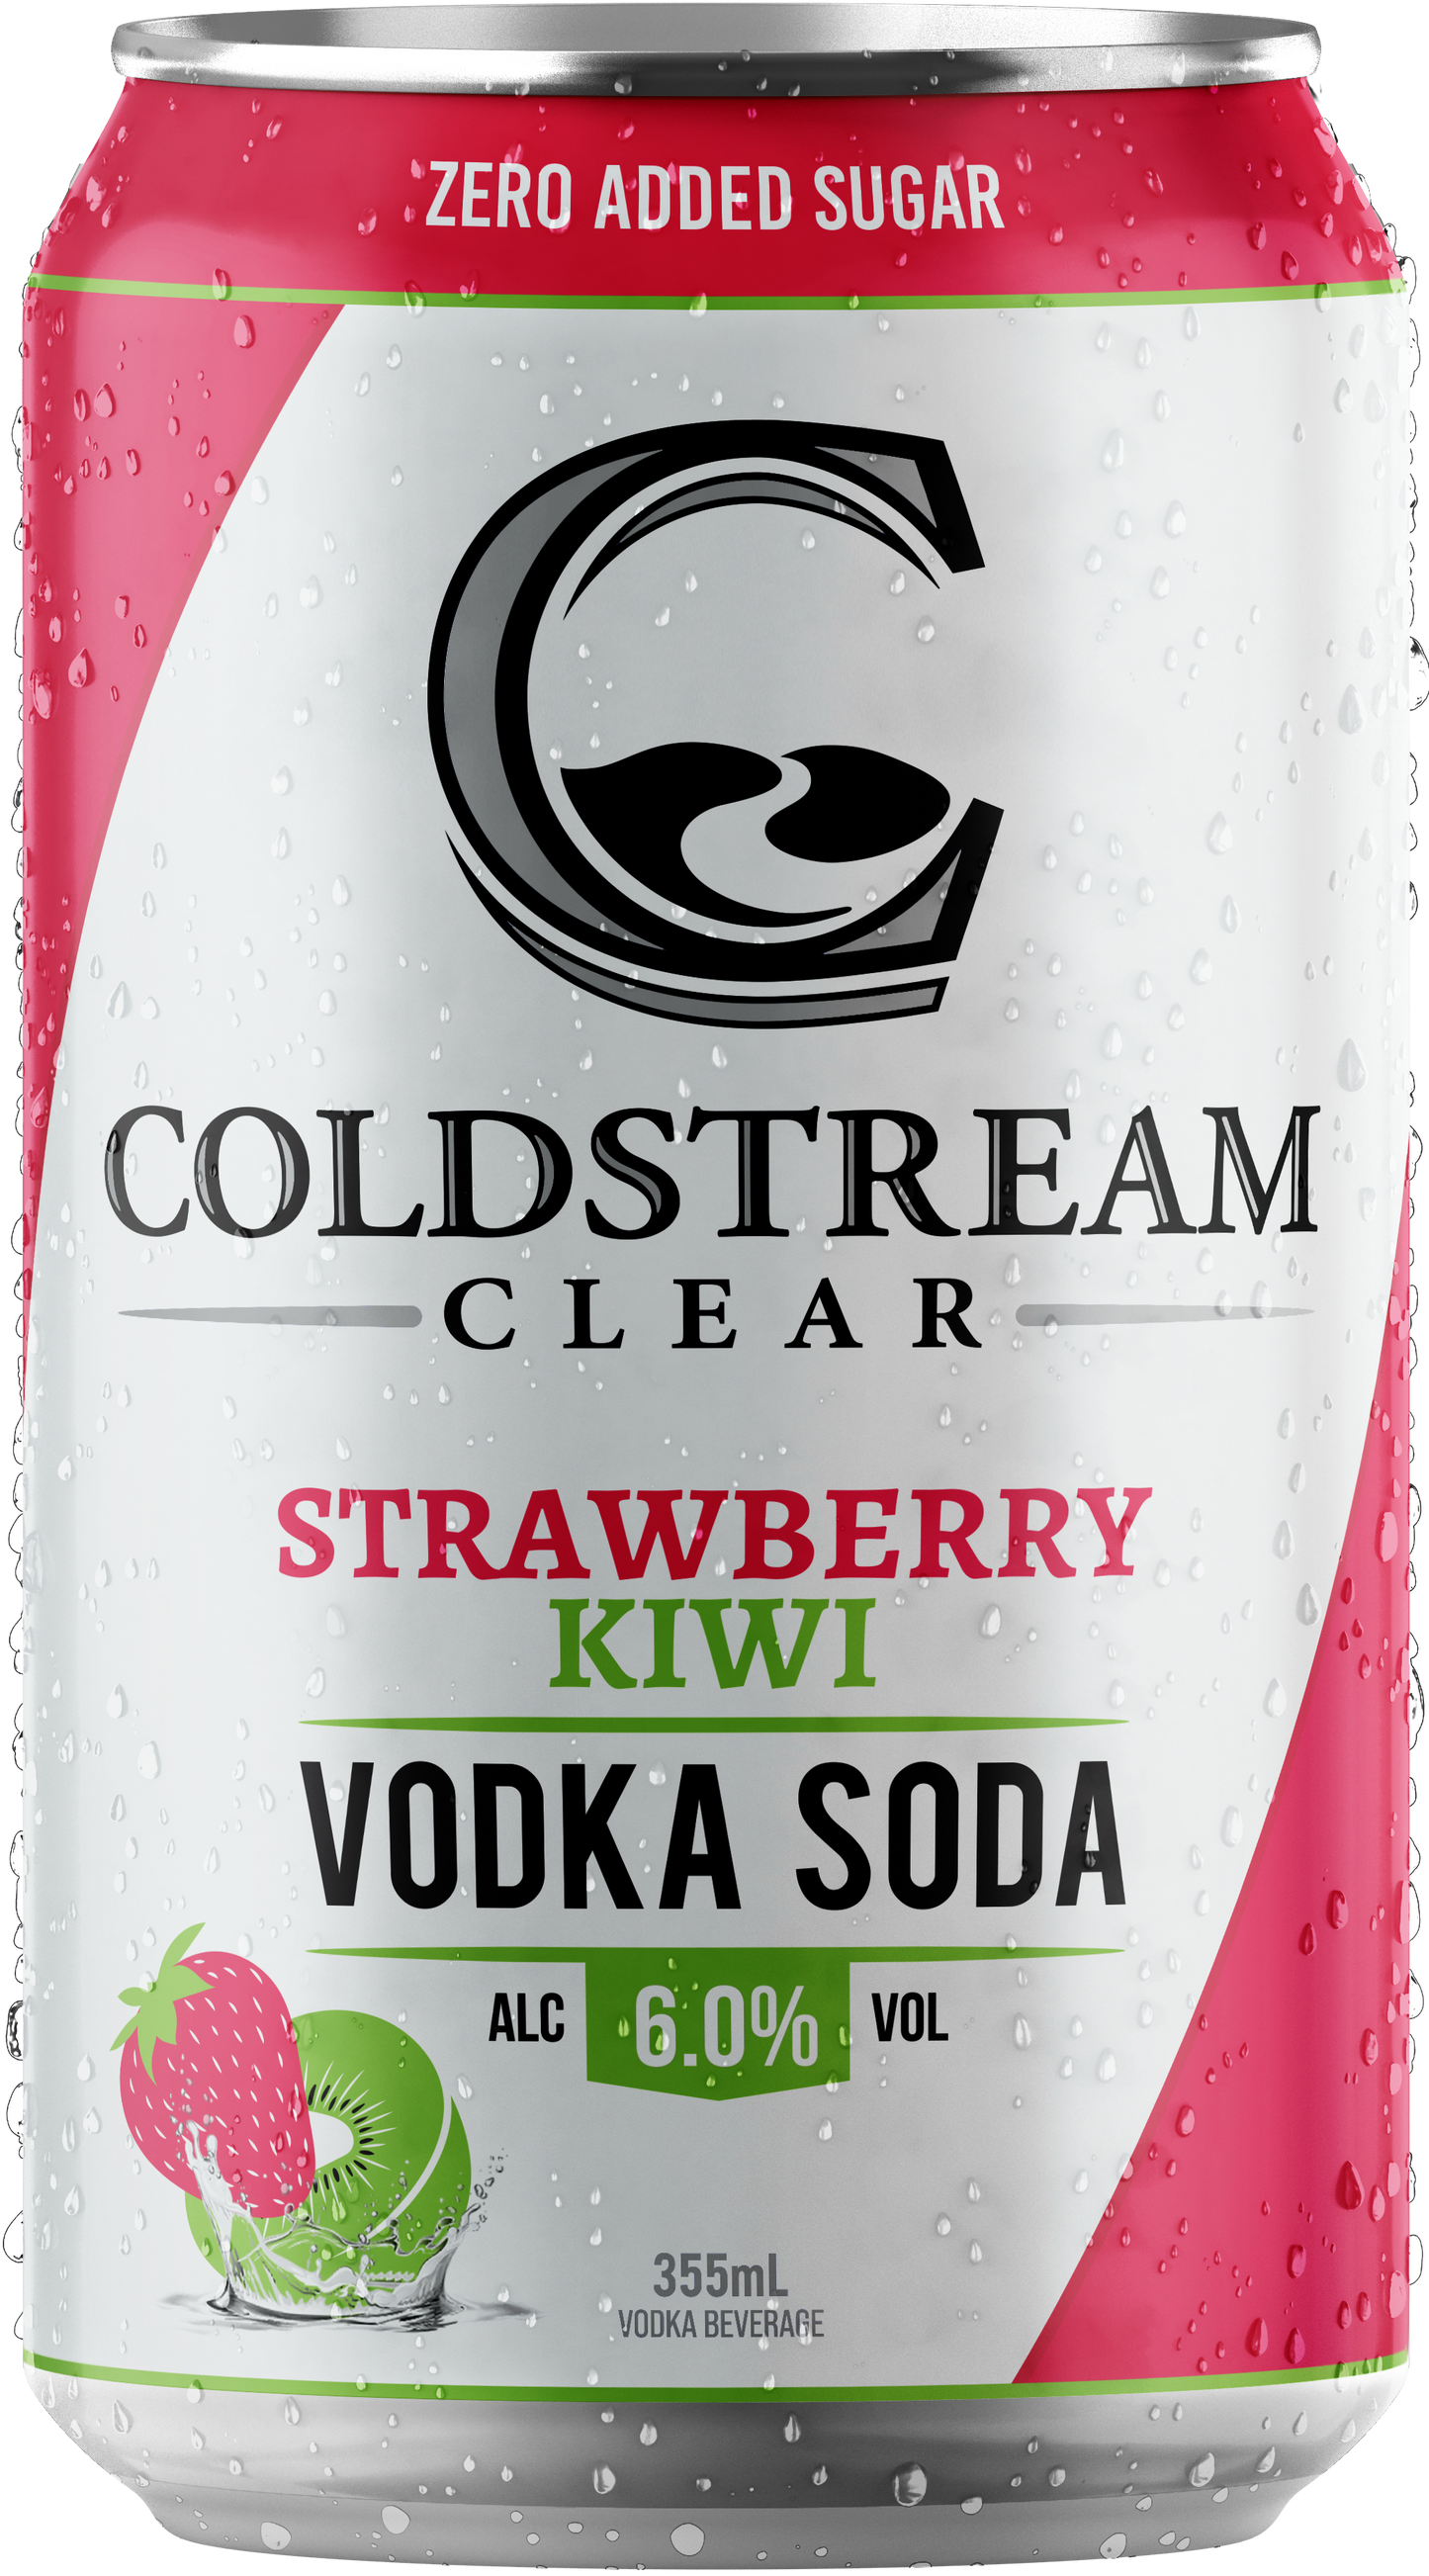 Strawberry Kiwi Vodka Soda